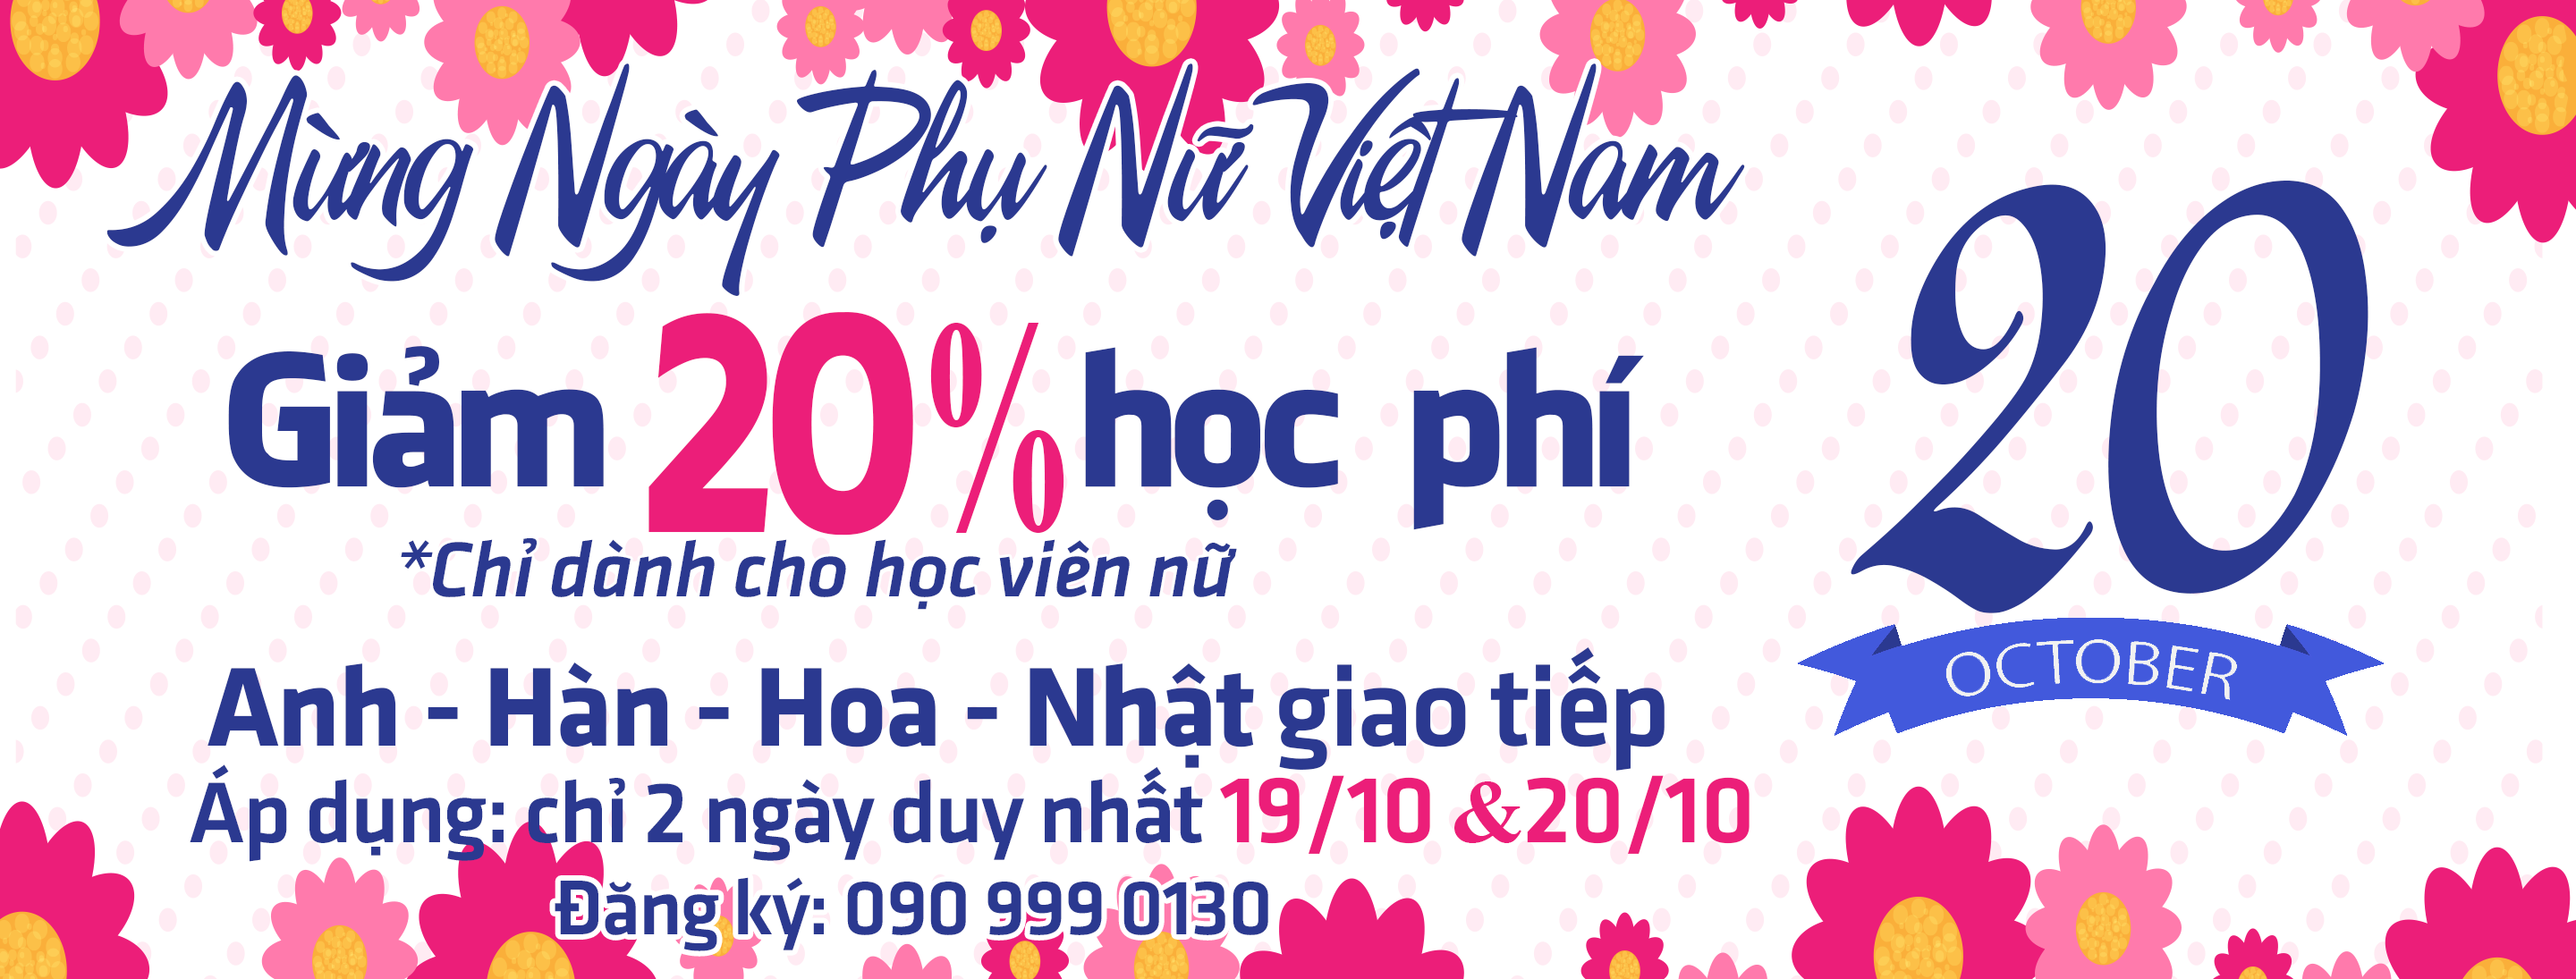 Giảm 20% học phí Anh - Hàn - Hoa - Nhật mừng ngày Phụ Nữ Việt Nam